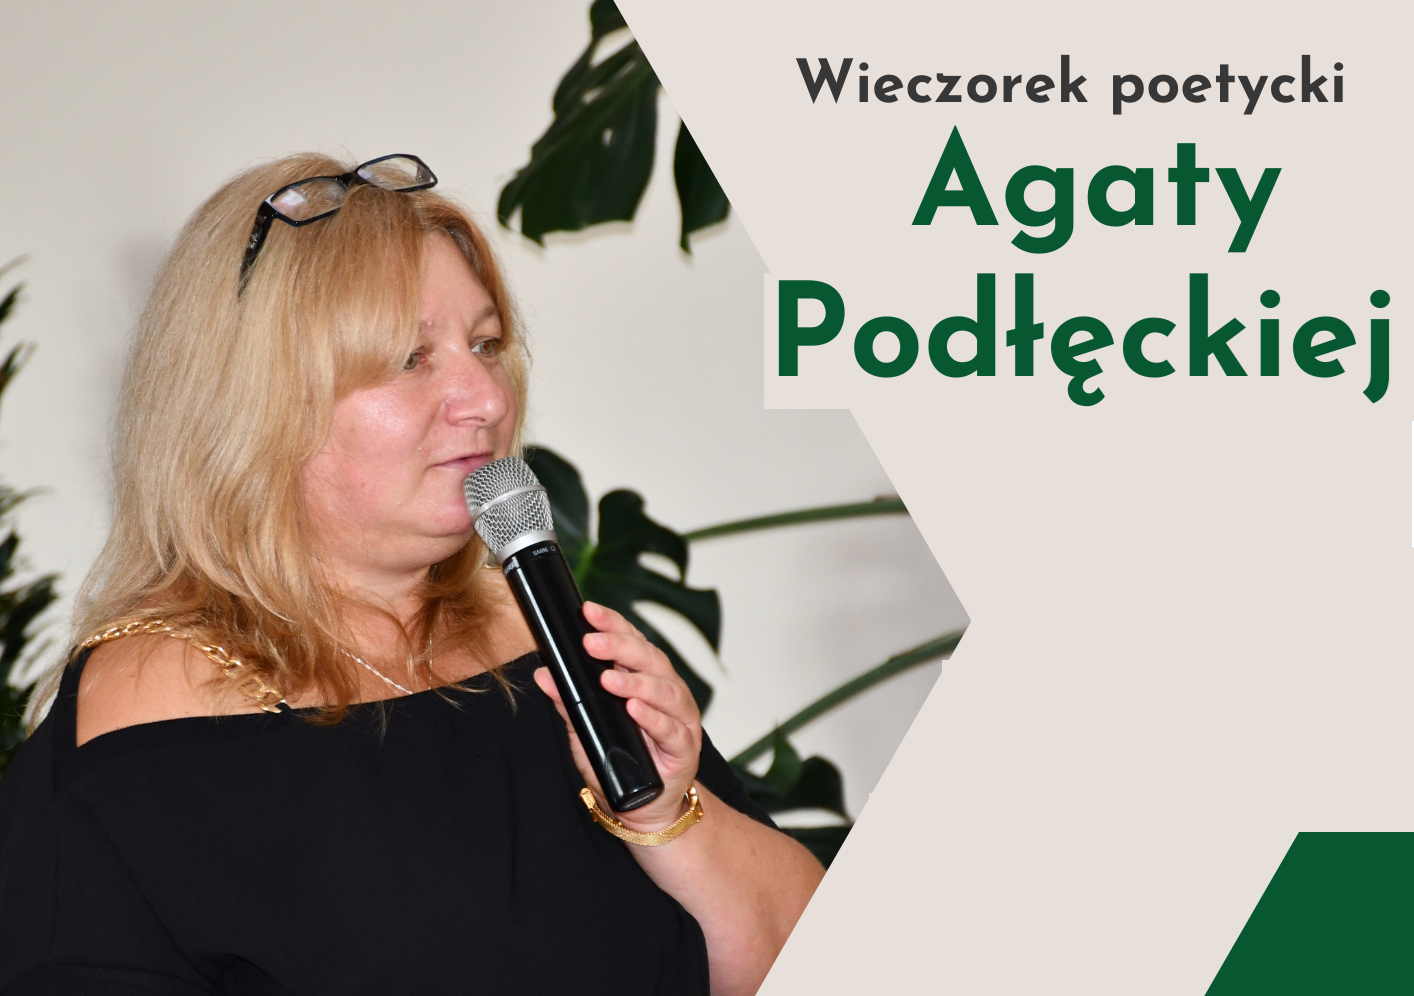 Wieczorek poetycki Agaty Podłęckiej